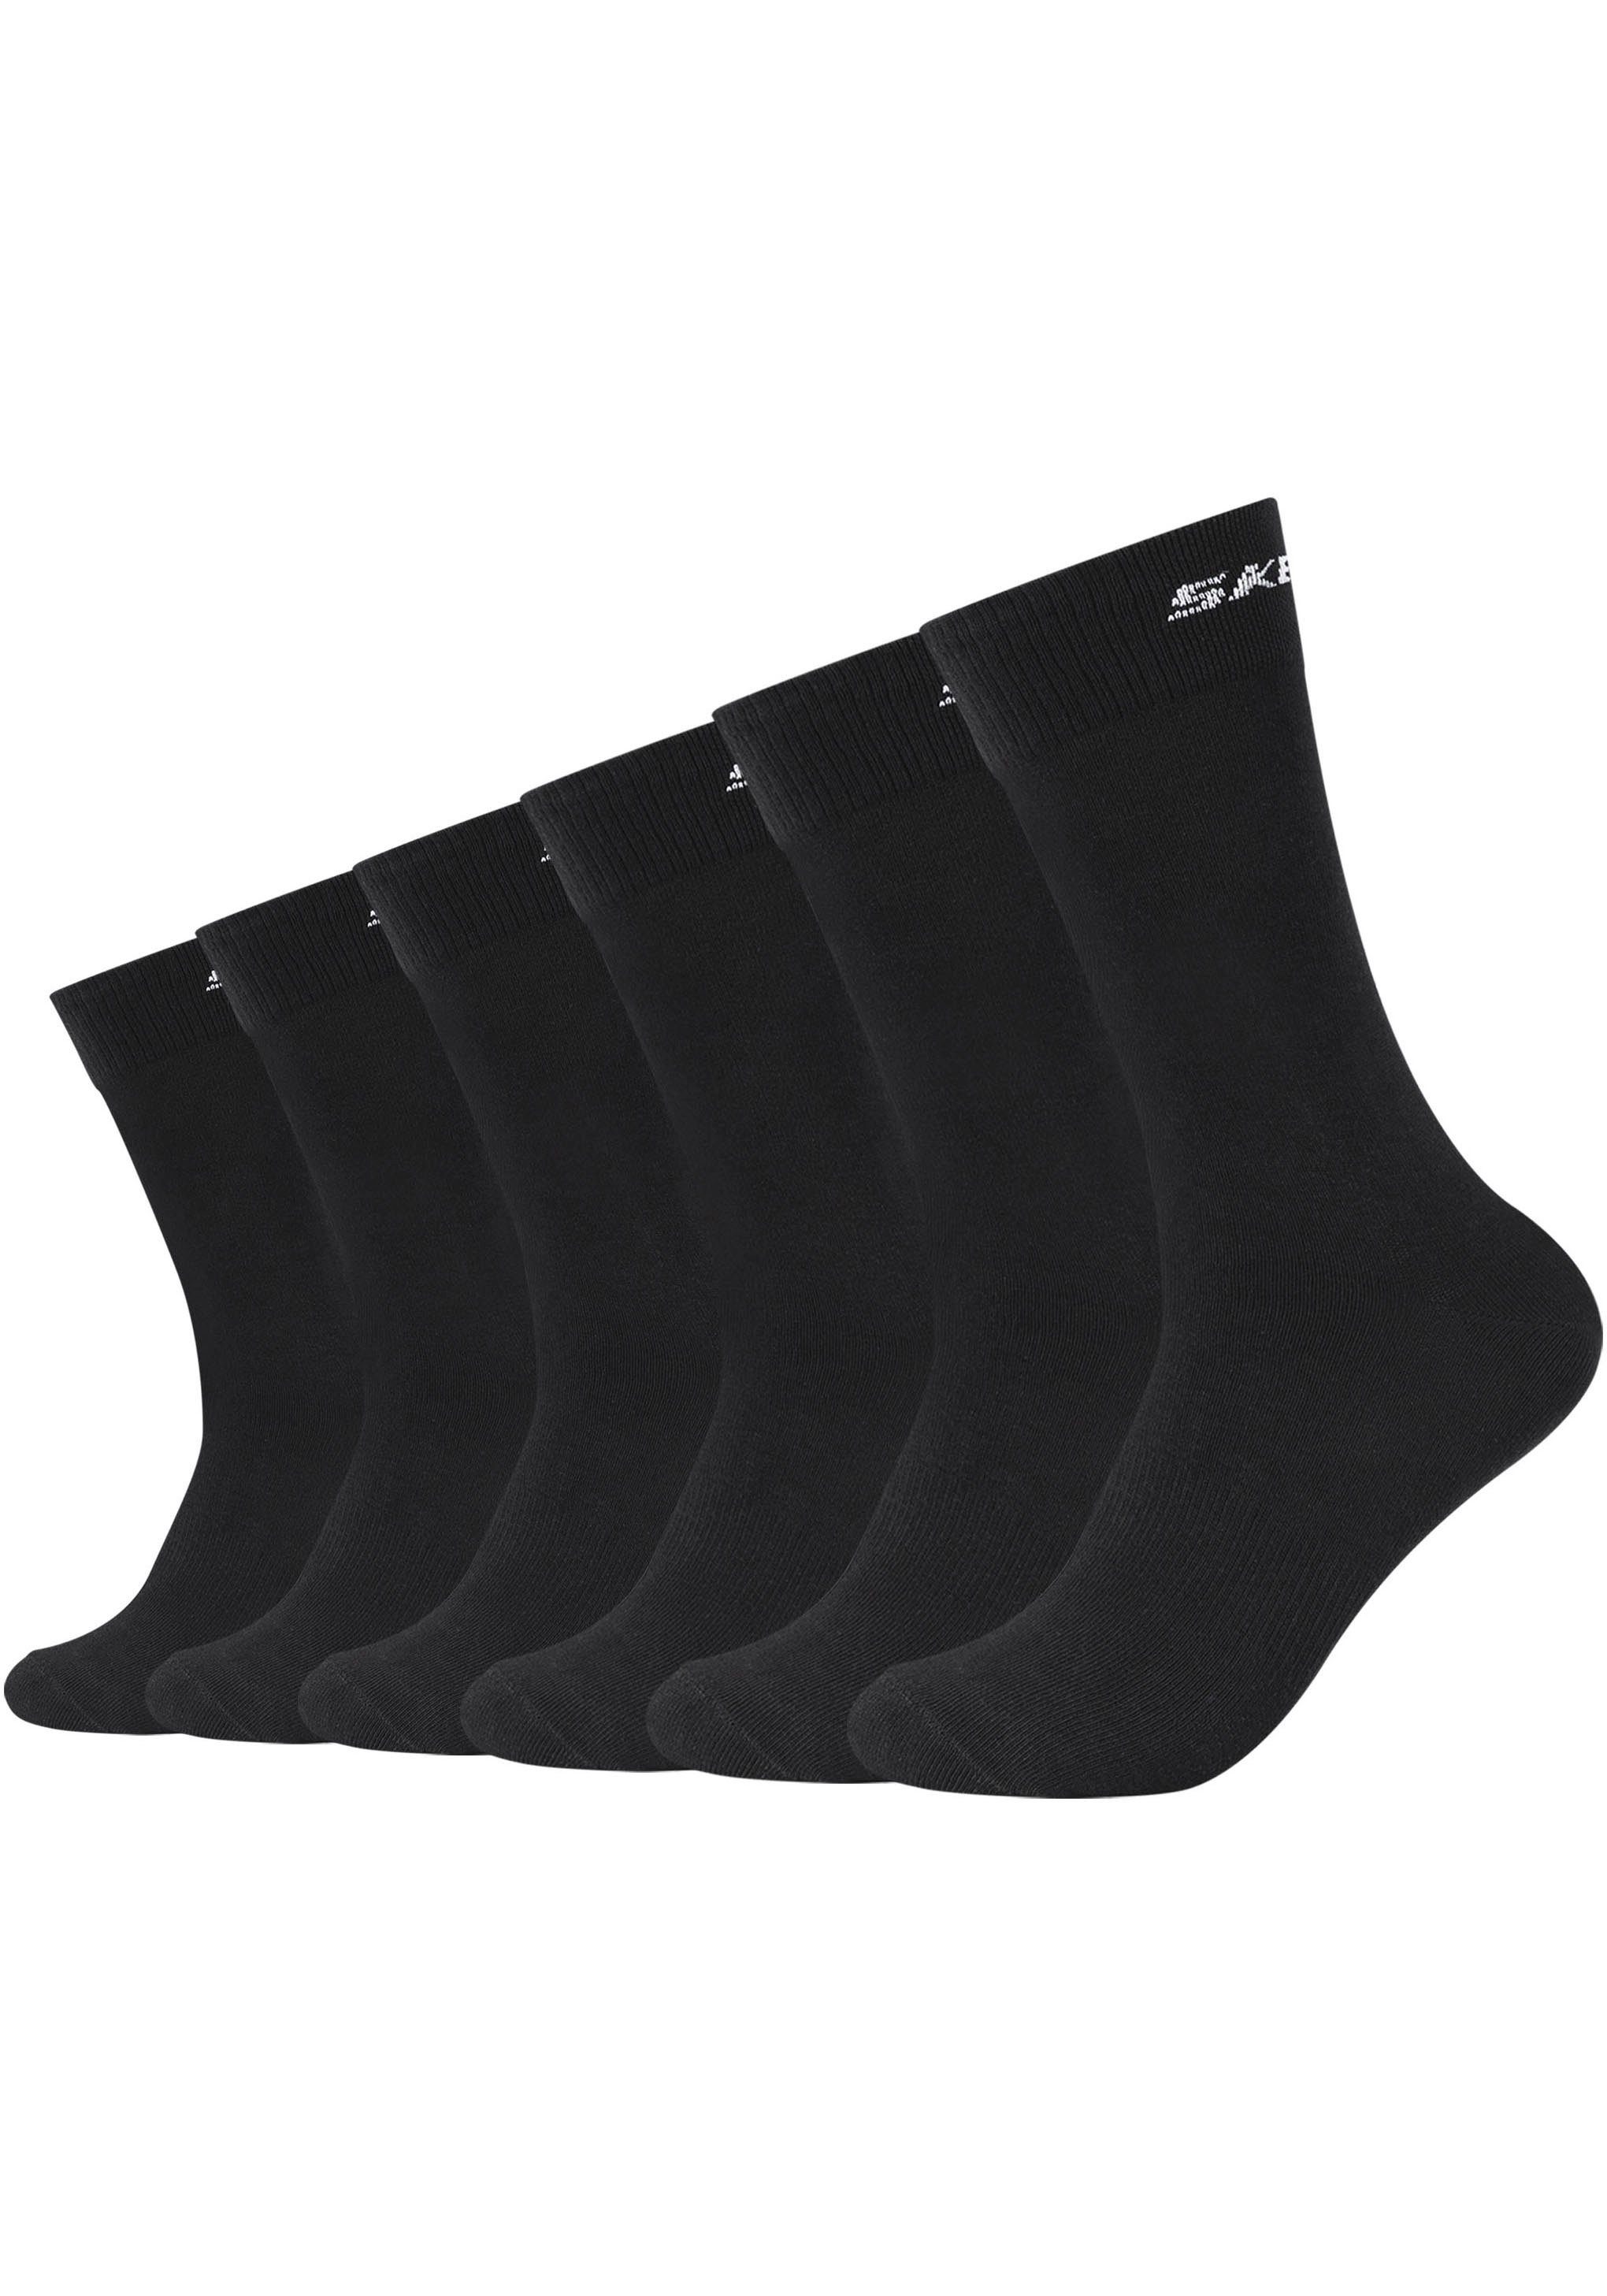 Dank 6er Baumwollanteil (6-Paar) Skechers angenehm Socken hohem zu im äußerst praktischen Pack, tragen